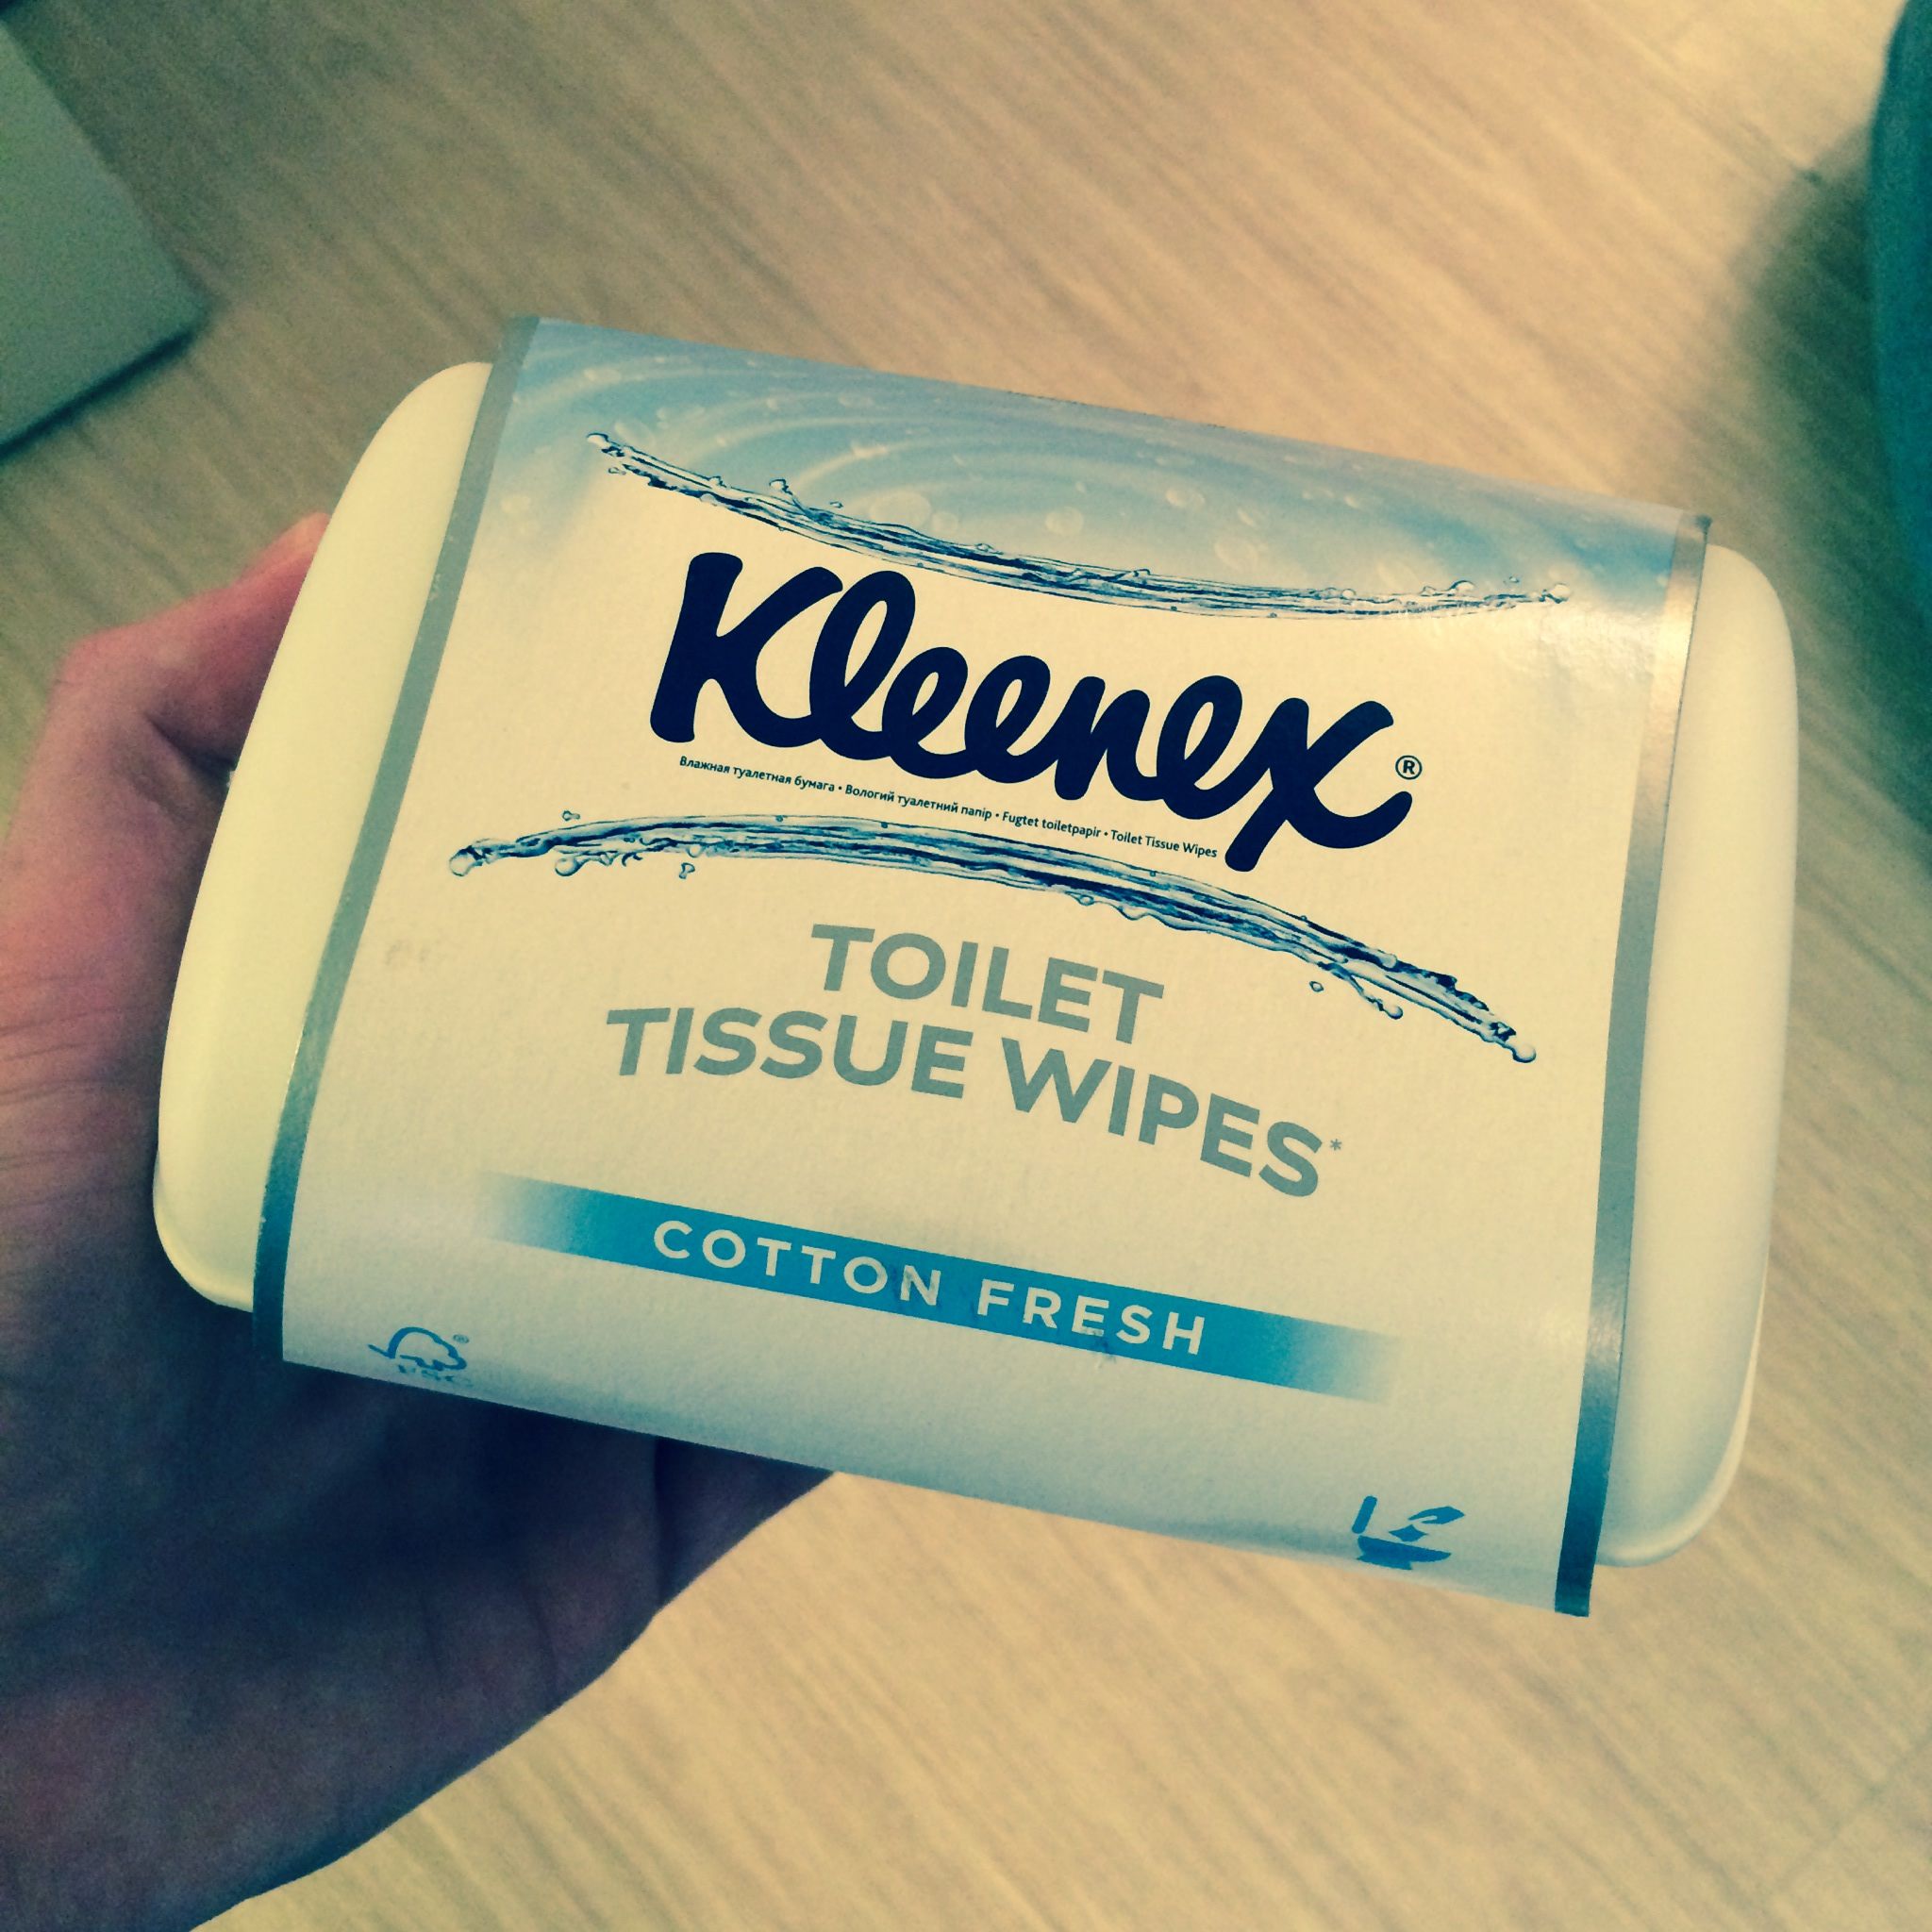 Kleenex/Особая туалетная бумага!